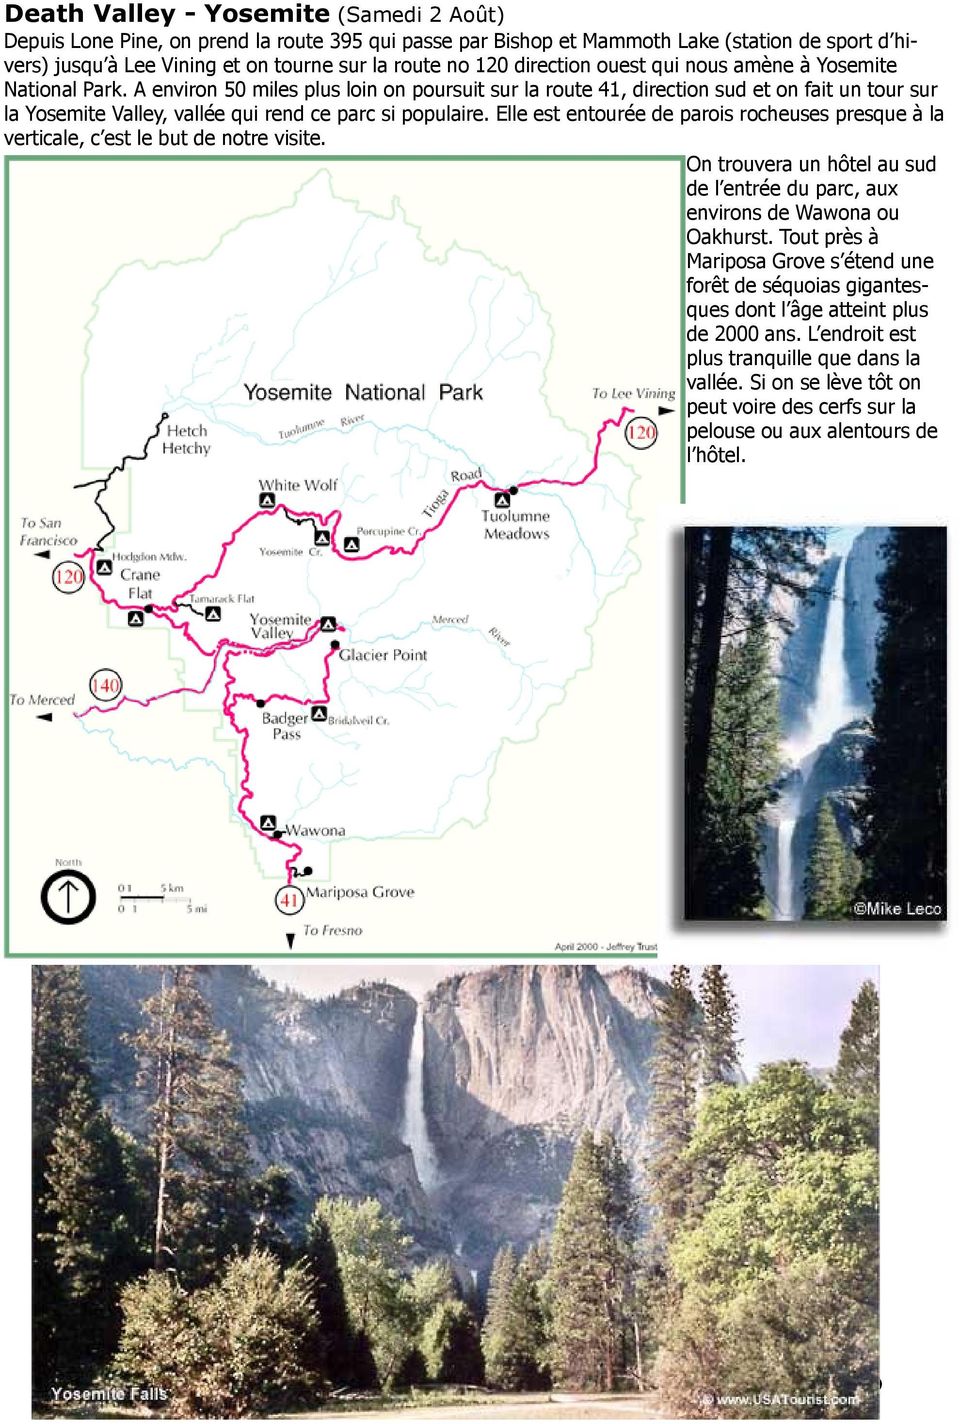 A environ 50 miles plus loin on poursuit sur la route 41, direction sud et on fait un tour sur la Yosemite Valley, vallée qui rend ce parc si populaire.